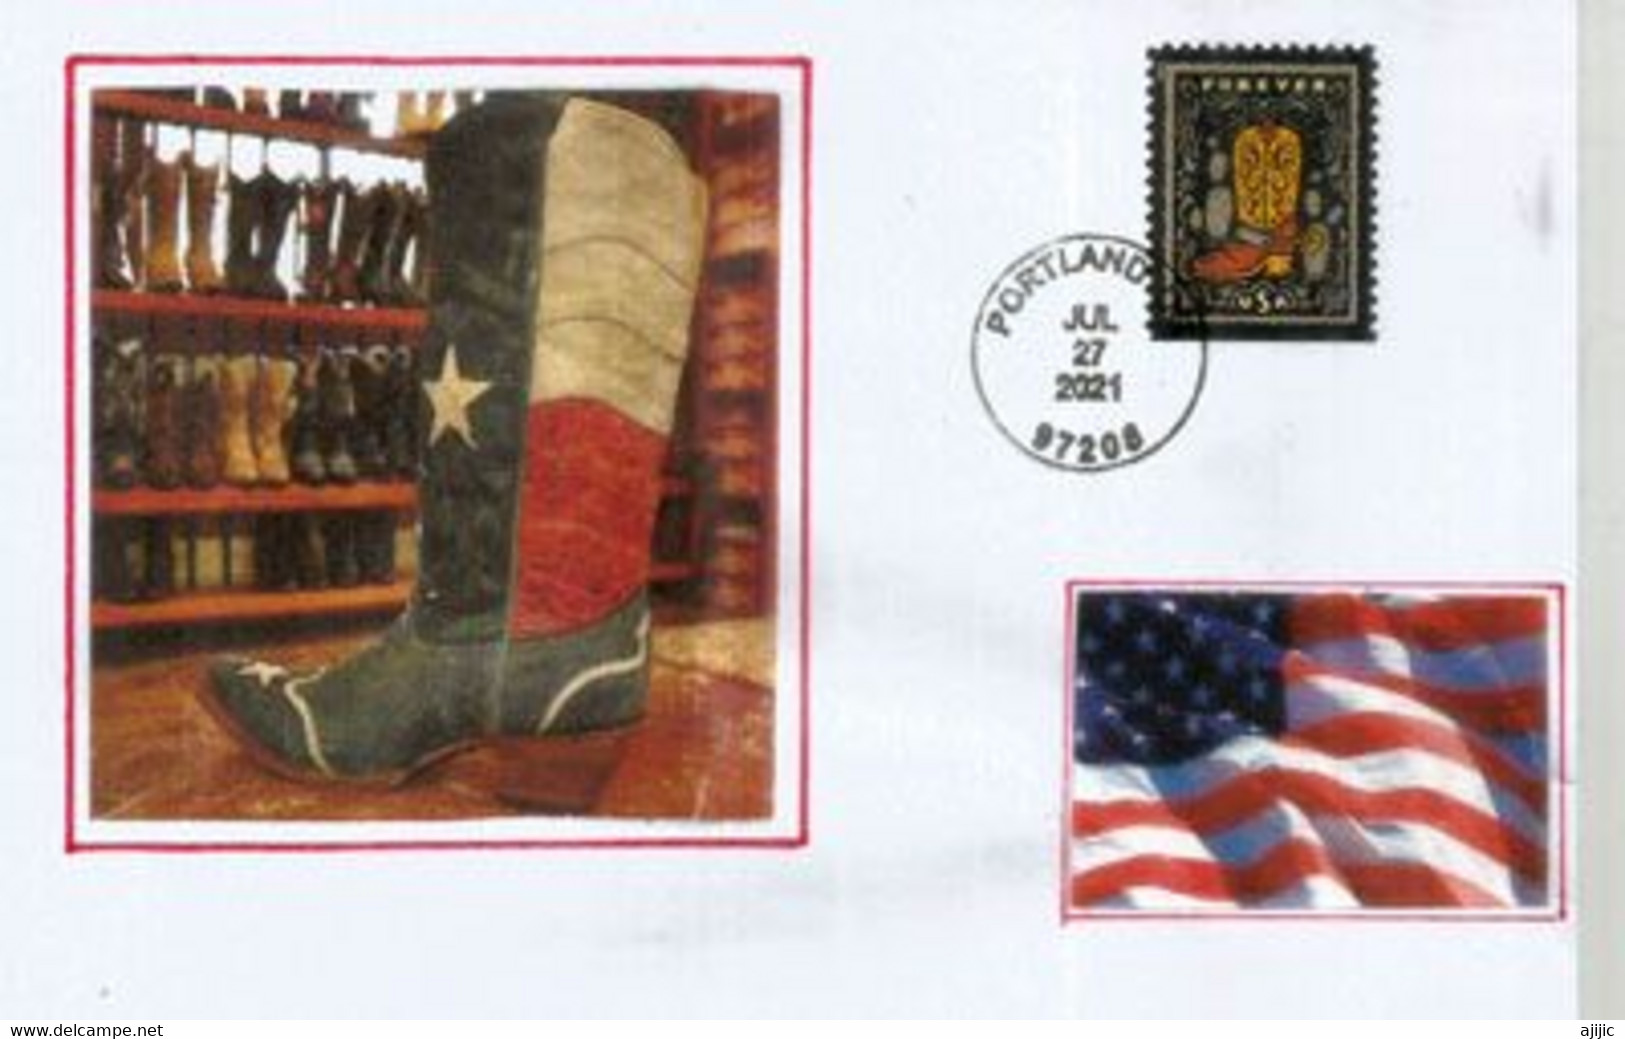 Western Wear Stamps 2021.(Farm & Ranch Work Clothing Garments) Letter Portland. Oregon. - Briefe U. Dokumente